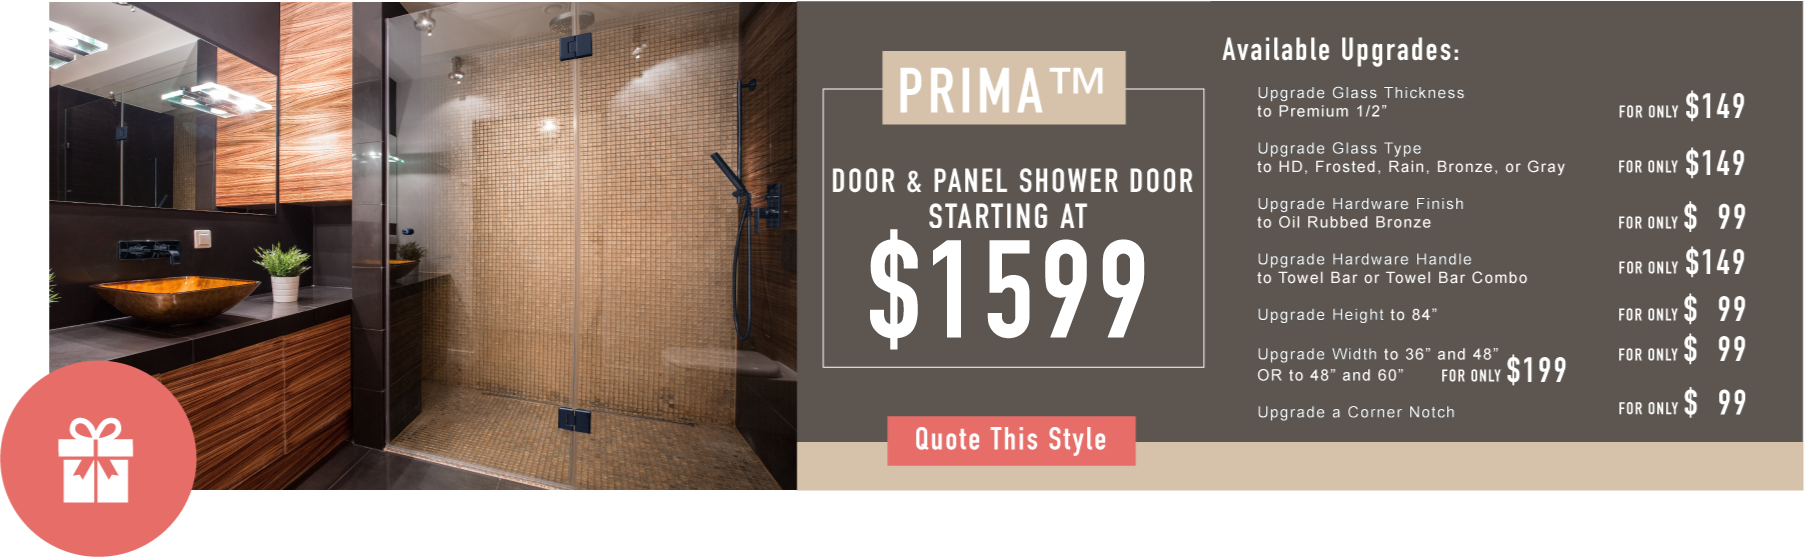 Door and Panel Shower Doors Promo